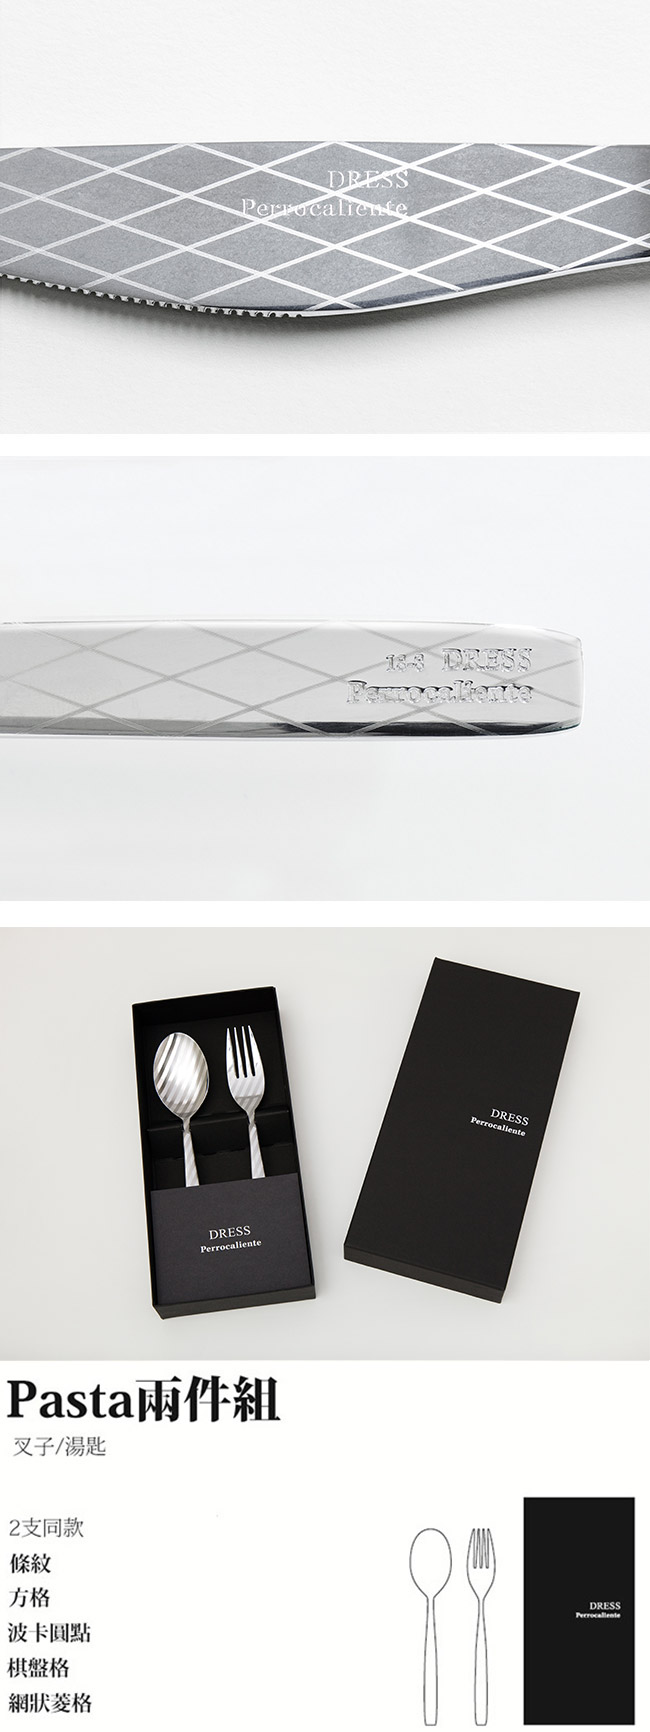 【4/23~4/29精選品牌9折優惠】Perrocaliente Dress Gift Set 銀色盒裝餐具組 Pasta兩件組 網狀菱格 (湯匙+叉子)